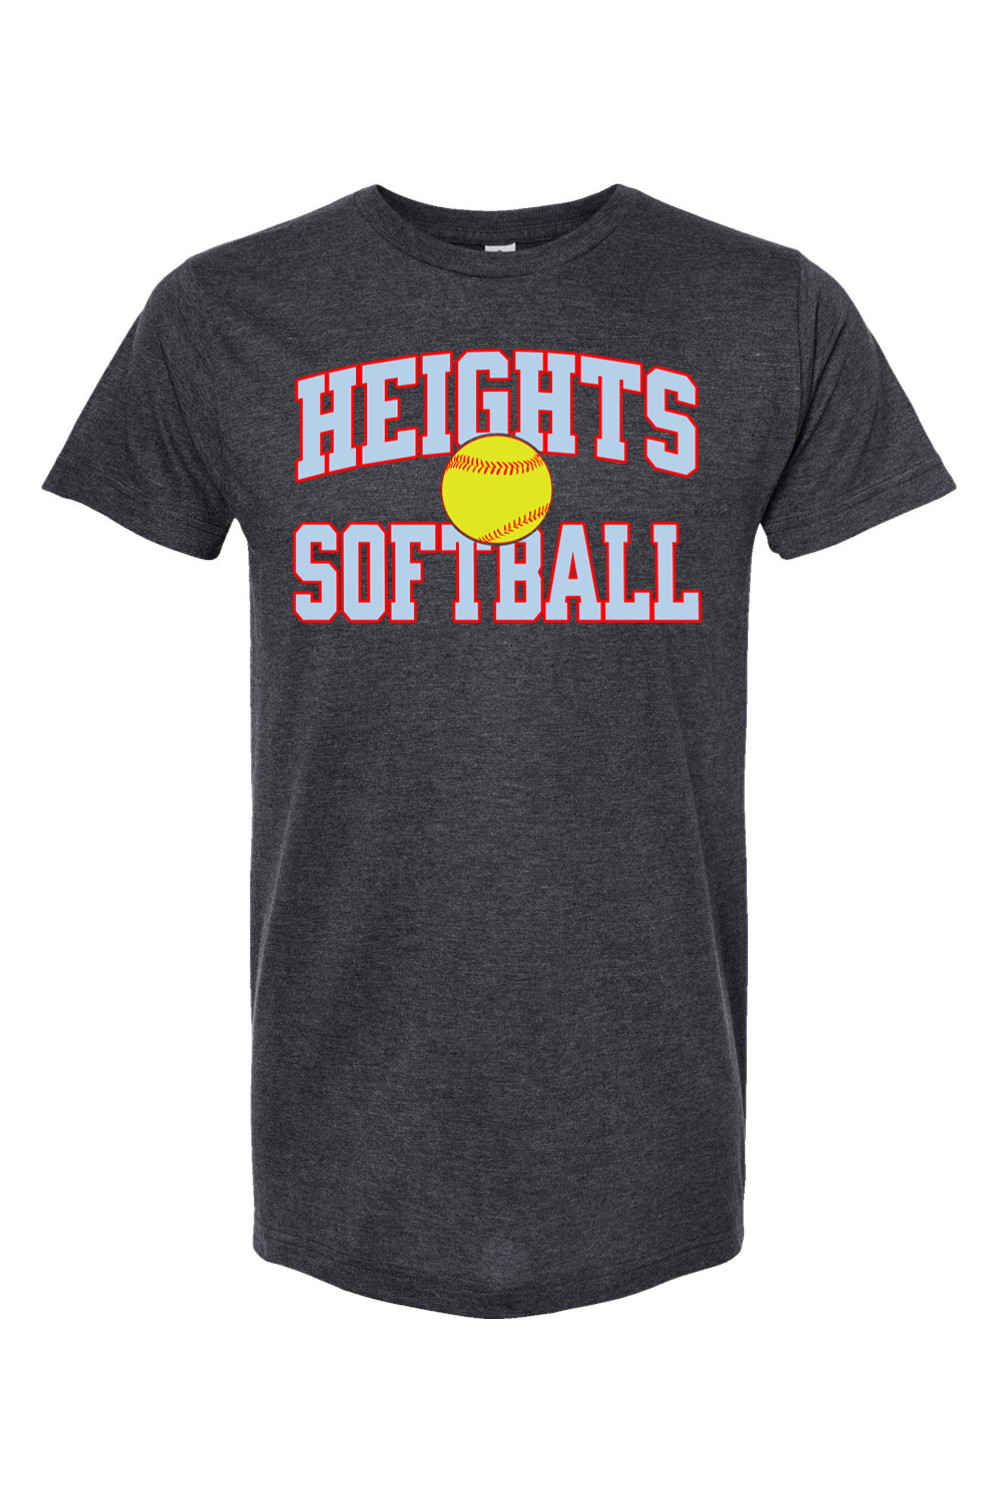 Heights Softball - Block - T-Shirt - Yinzylvania